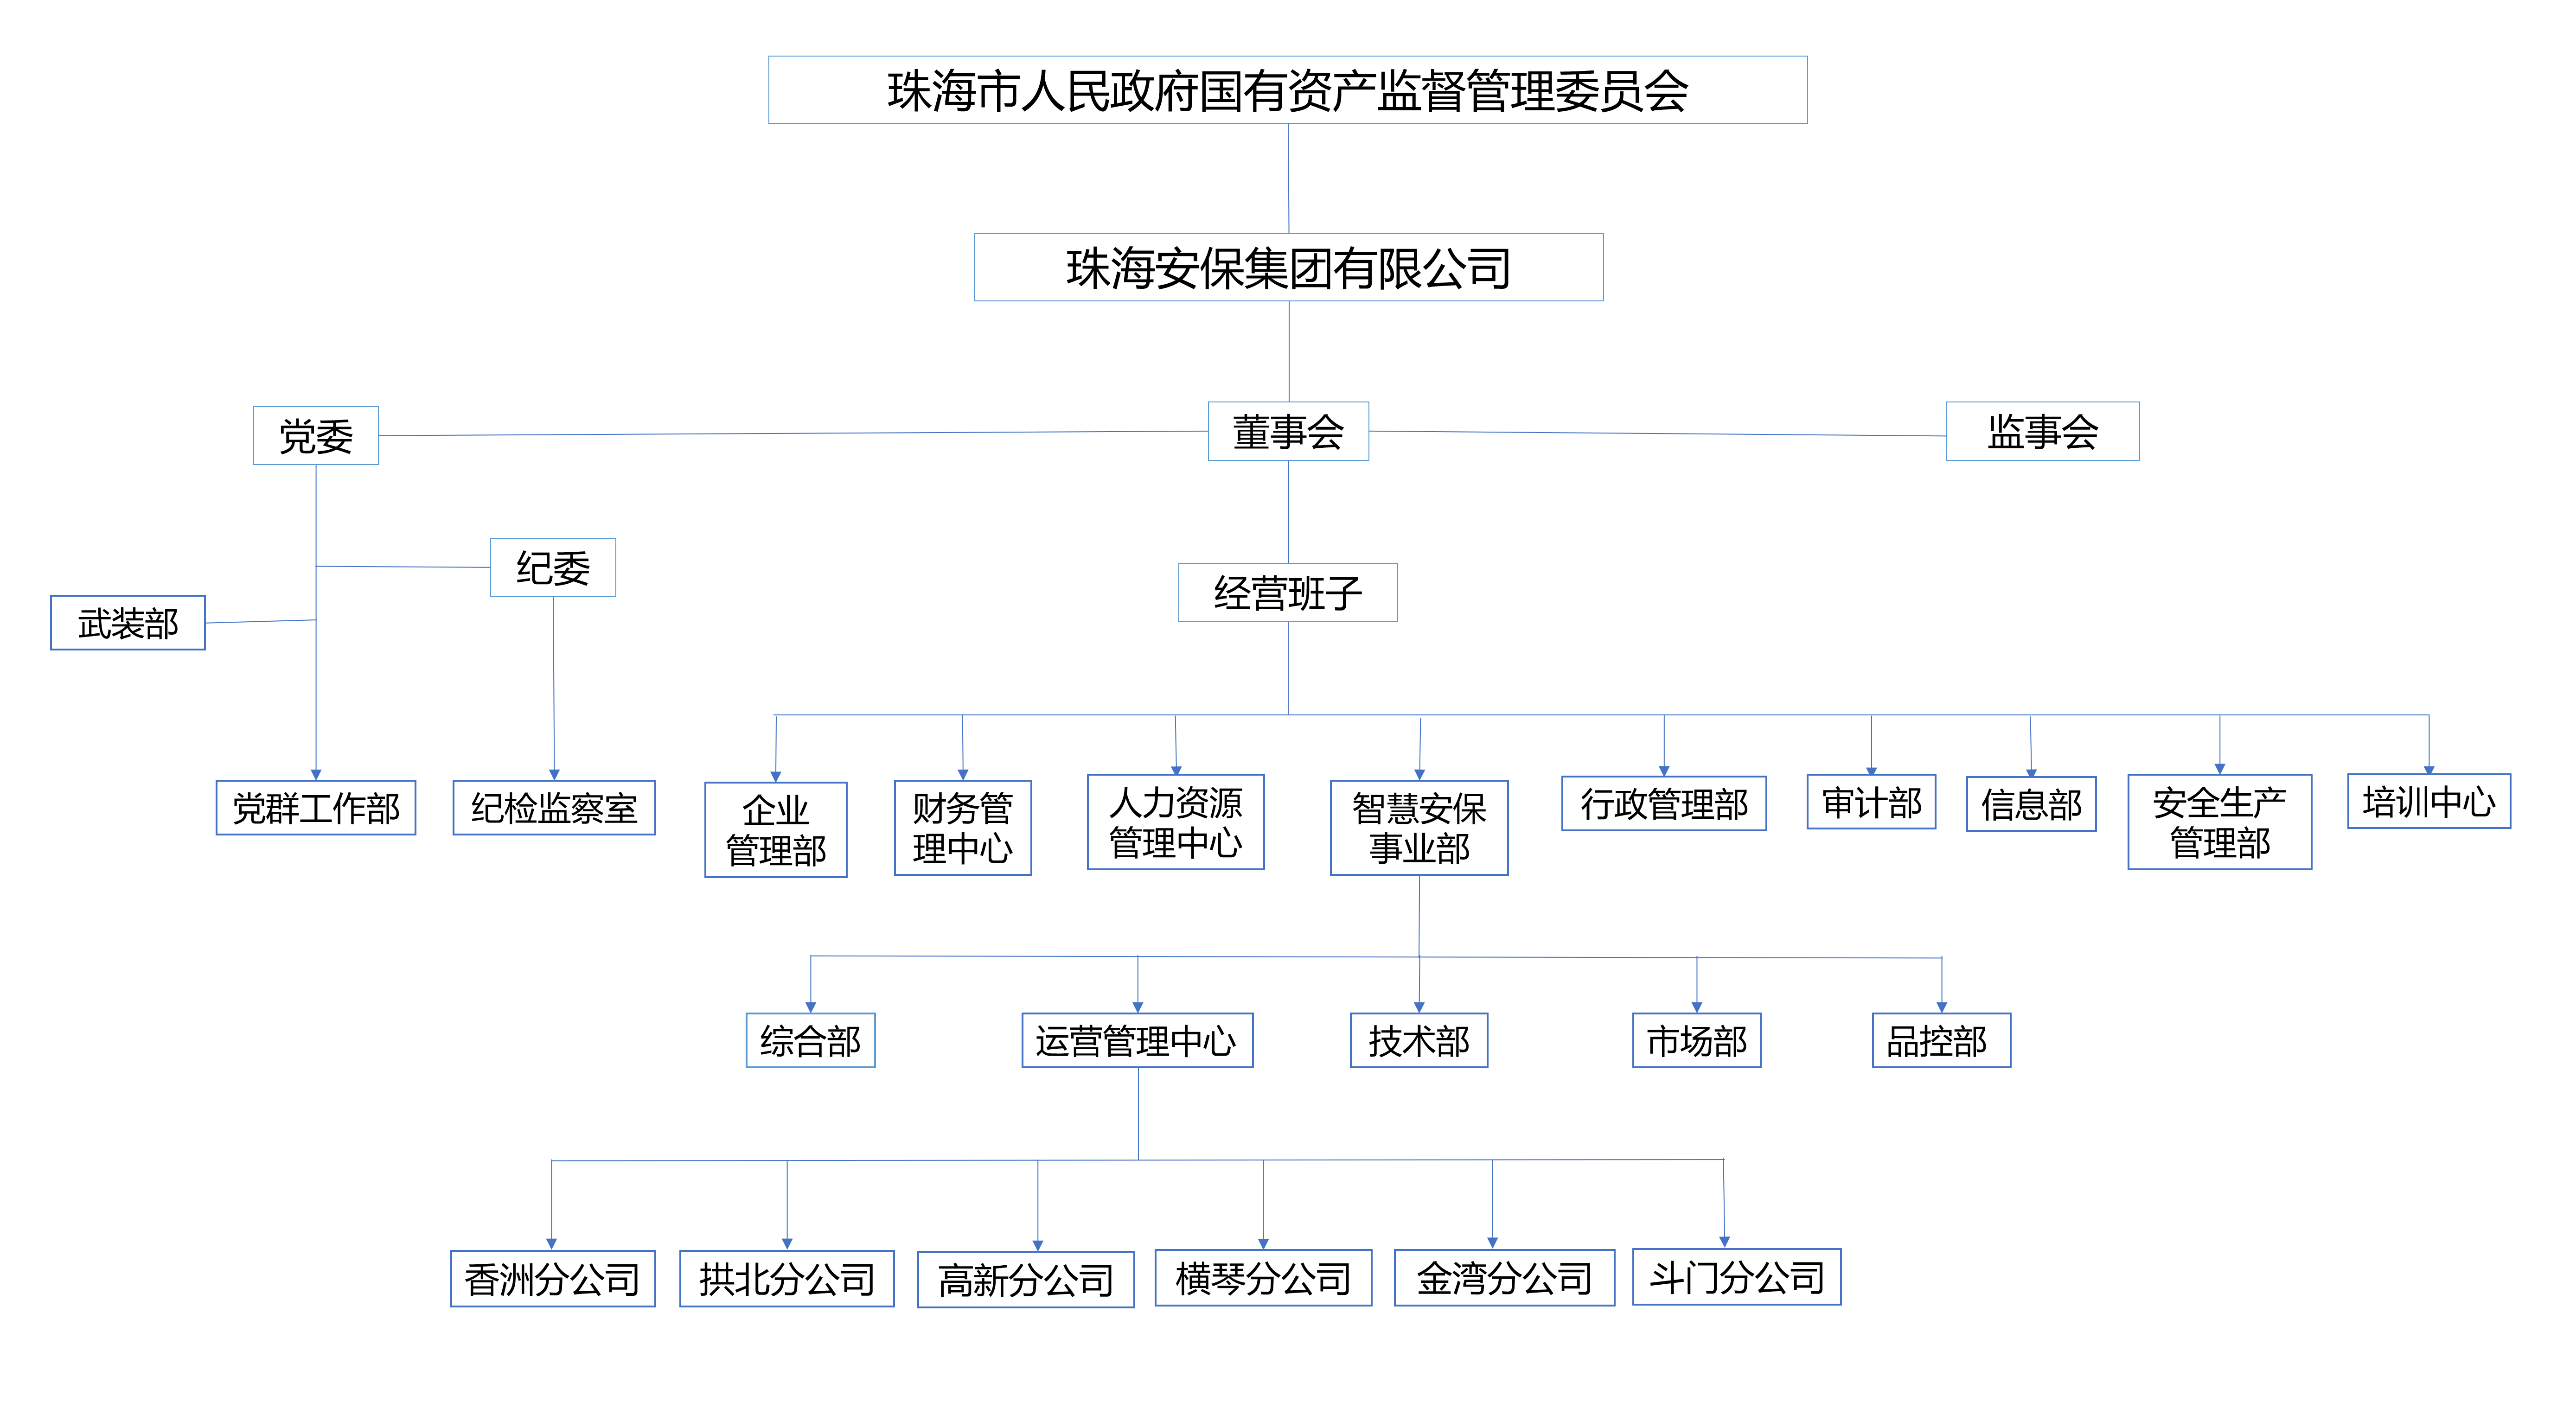 凯发注册手机版官网集团有限公司组织架构图_01.png